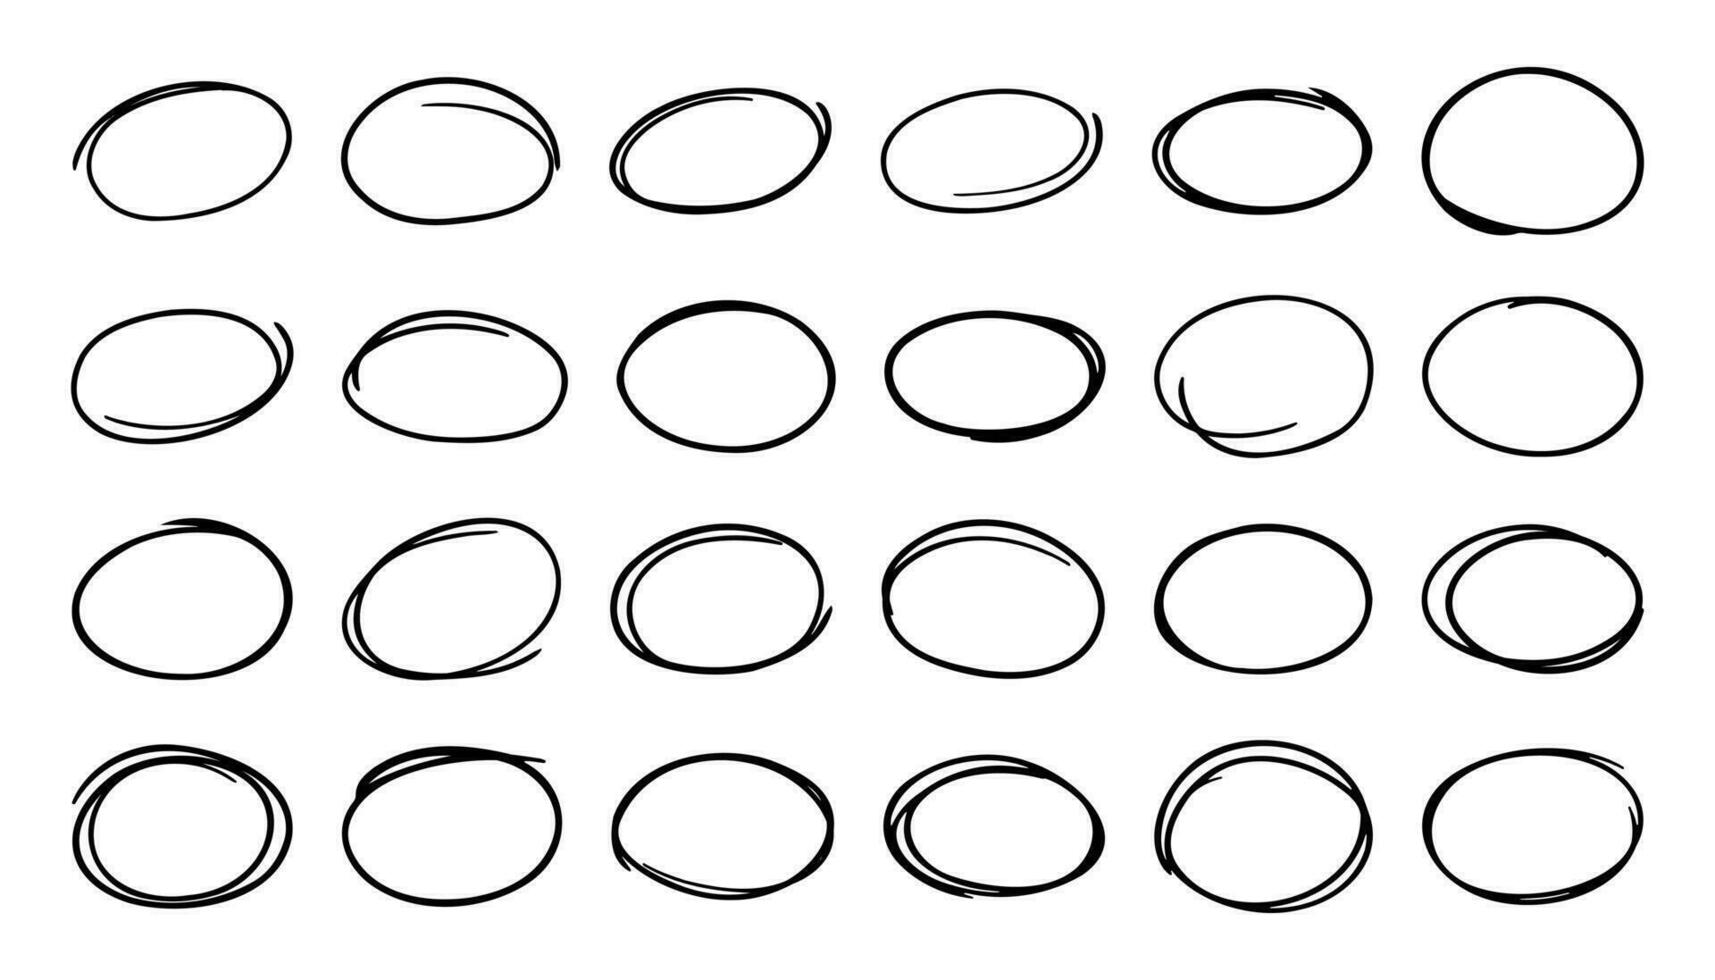 Set of hand drawn oval ellipse doodles vector illustration